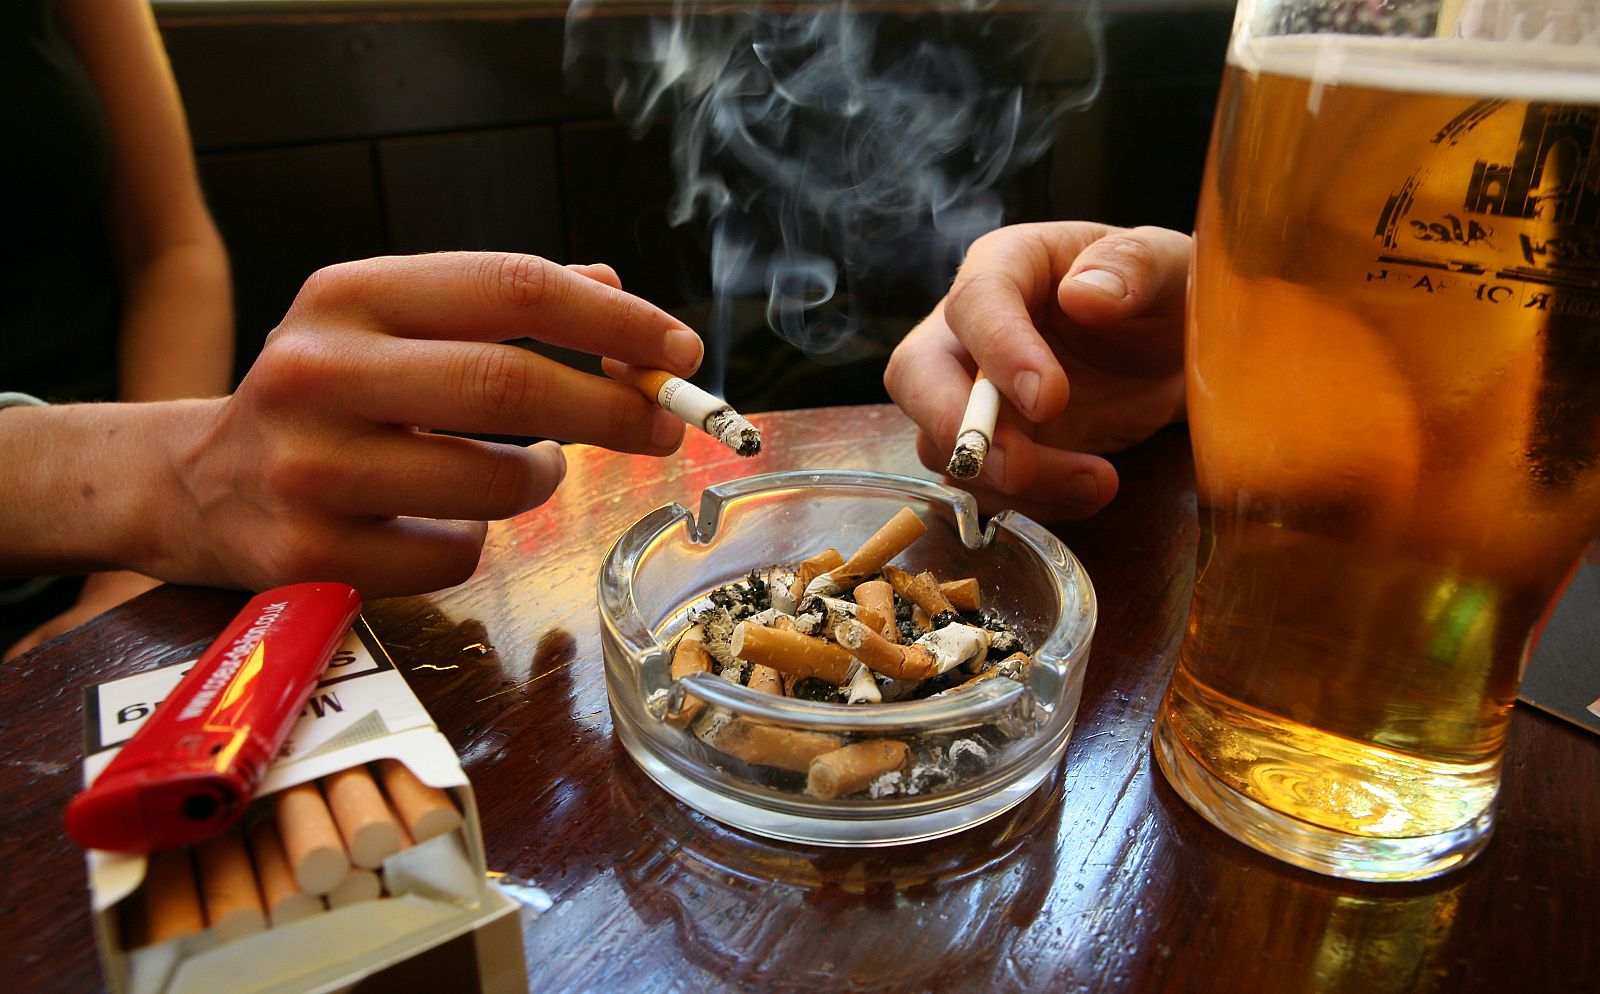 A partir del próximo 2 de enero de 2011 estará prohibido fumar en bares y restaurantes en España.